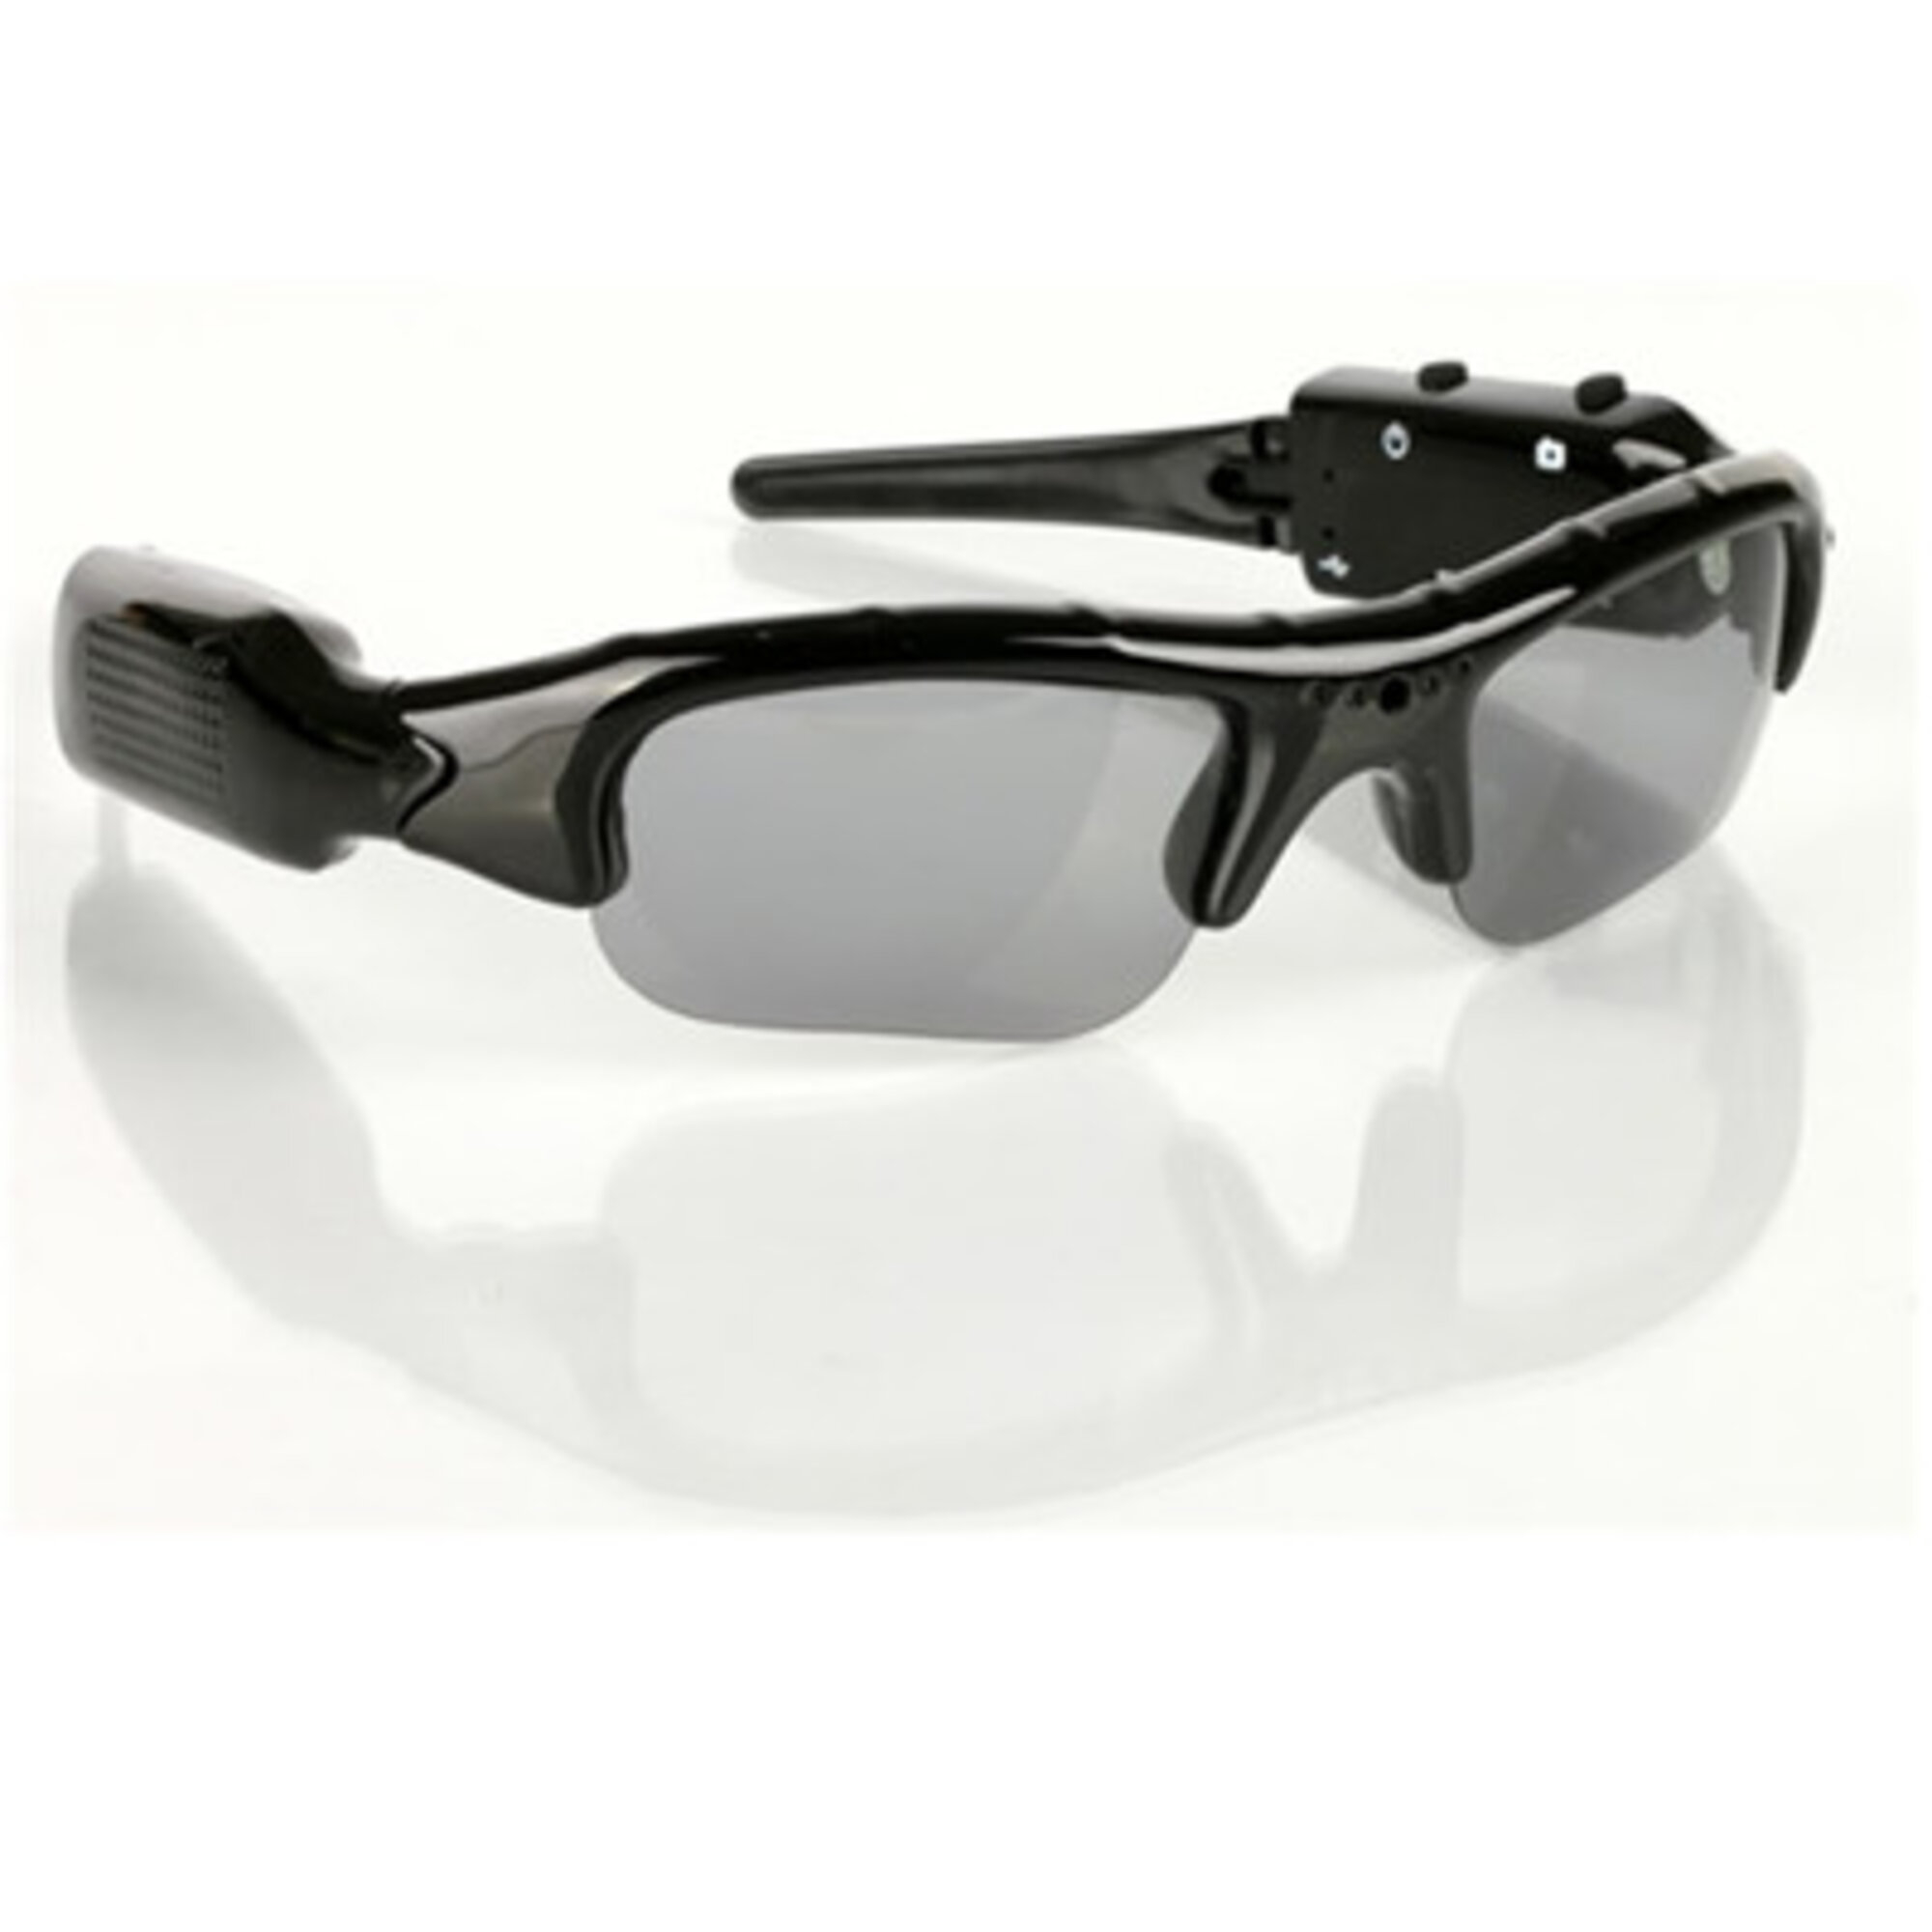 Køb M008 solbriller hos Alabazar - 249,00